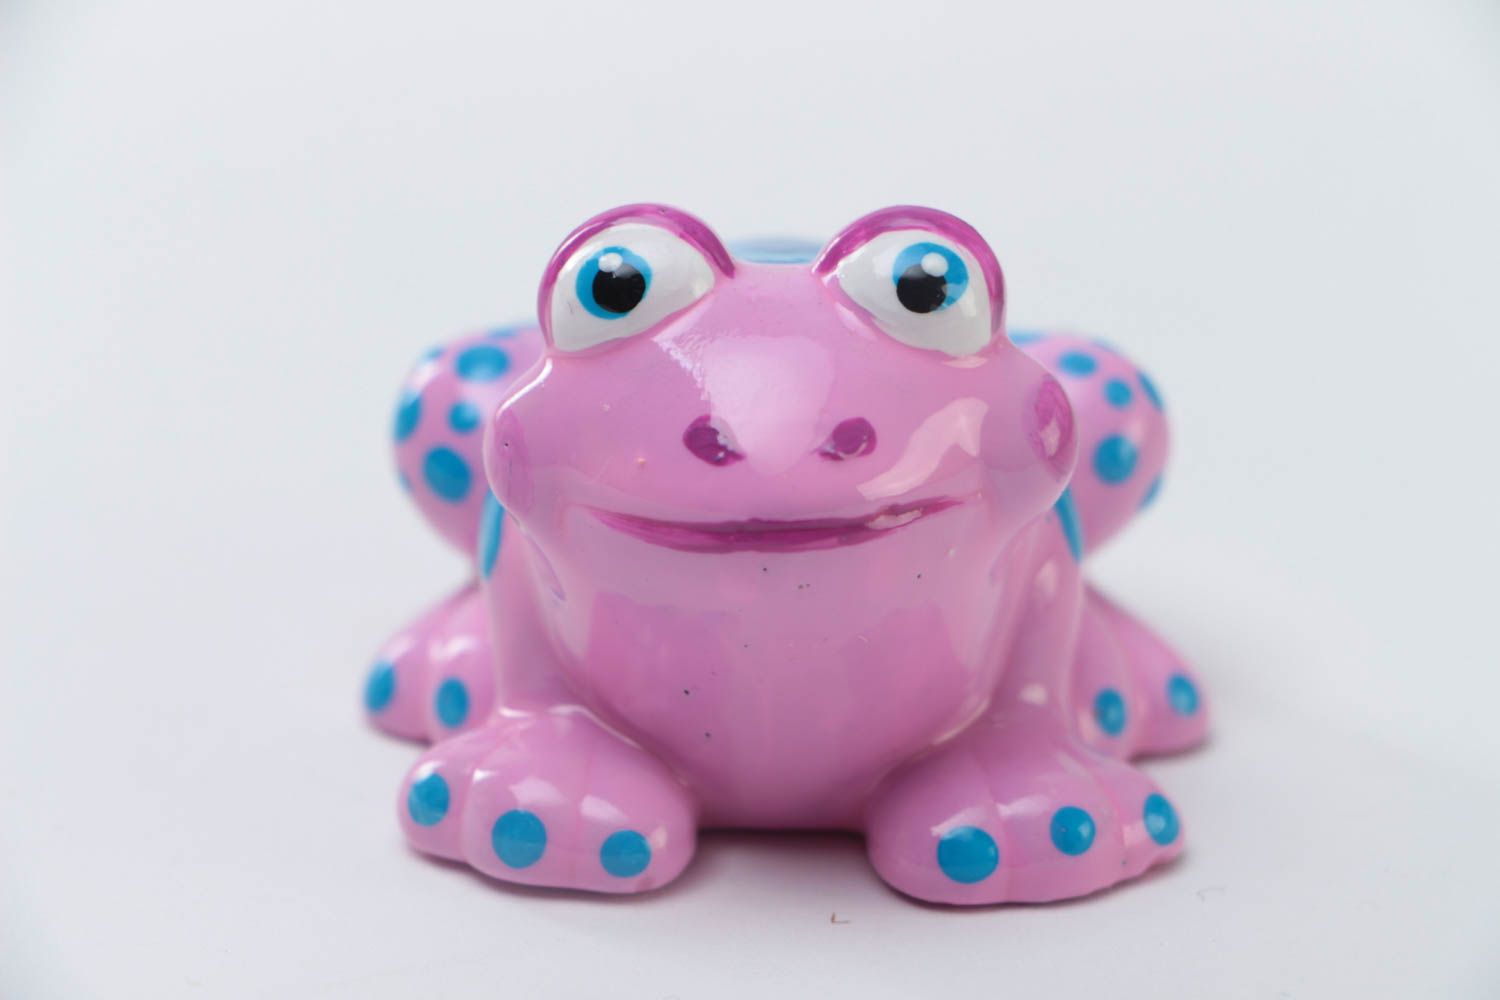 Figurine grenouille en plâtre faite main peinte de couleurs acryliques rose photo 2